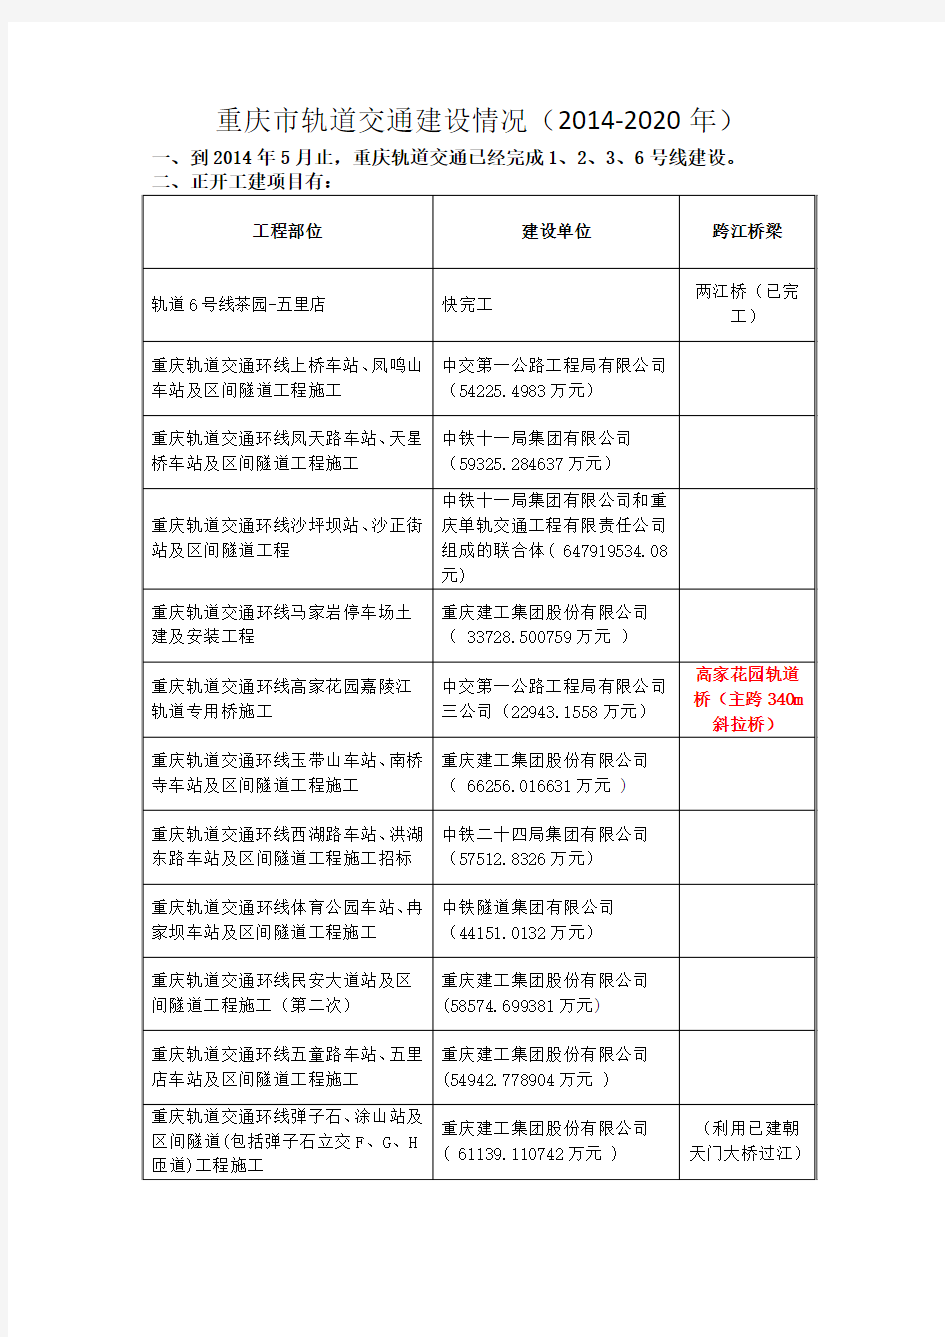 重庆市轨道交通建设项目(2014-2020)